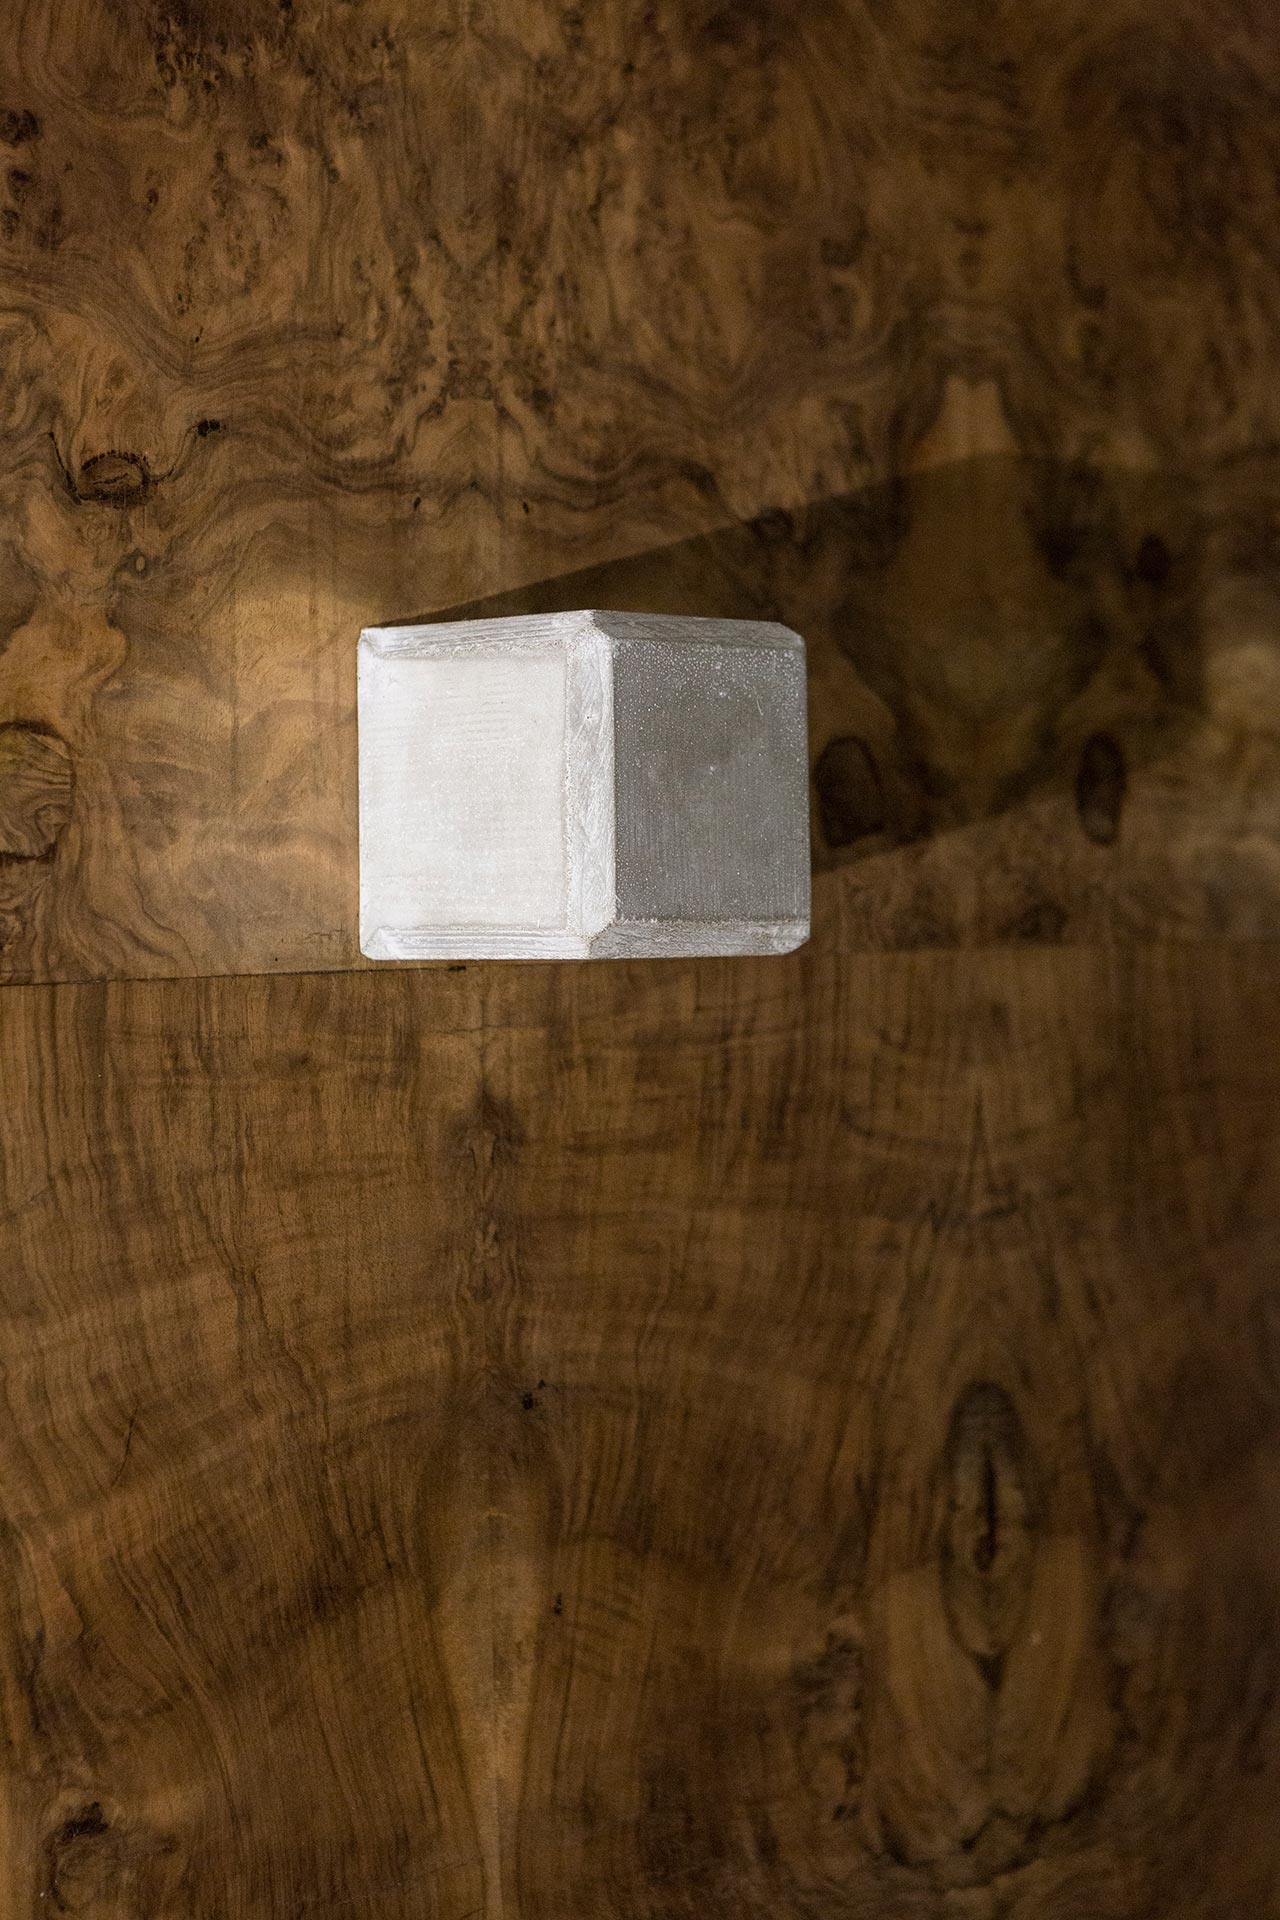 Nucleo (Piergiorgio Robino + Marzia Ricci), “Boolean” And (Footboard), 2017. Concrete, vintage furniture, 220 x 40 x 83h cm. Unique piece. Photo by Studio Pepe Fotografia.